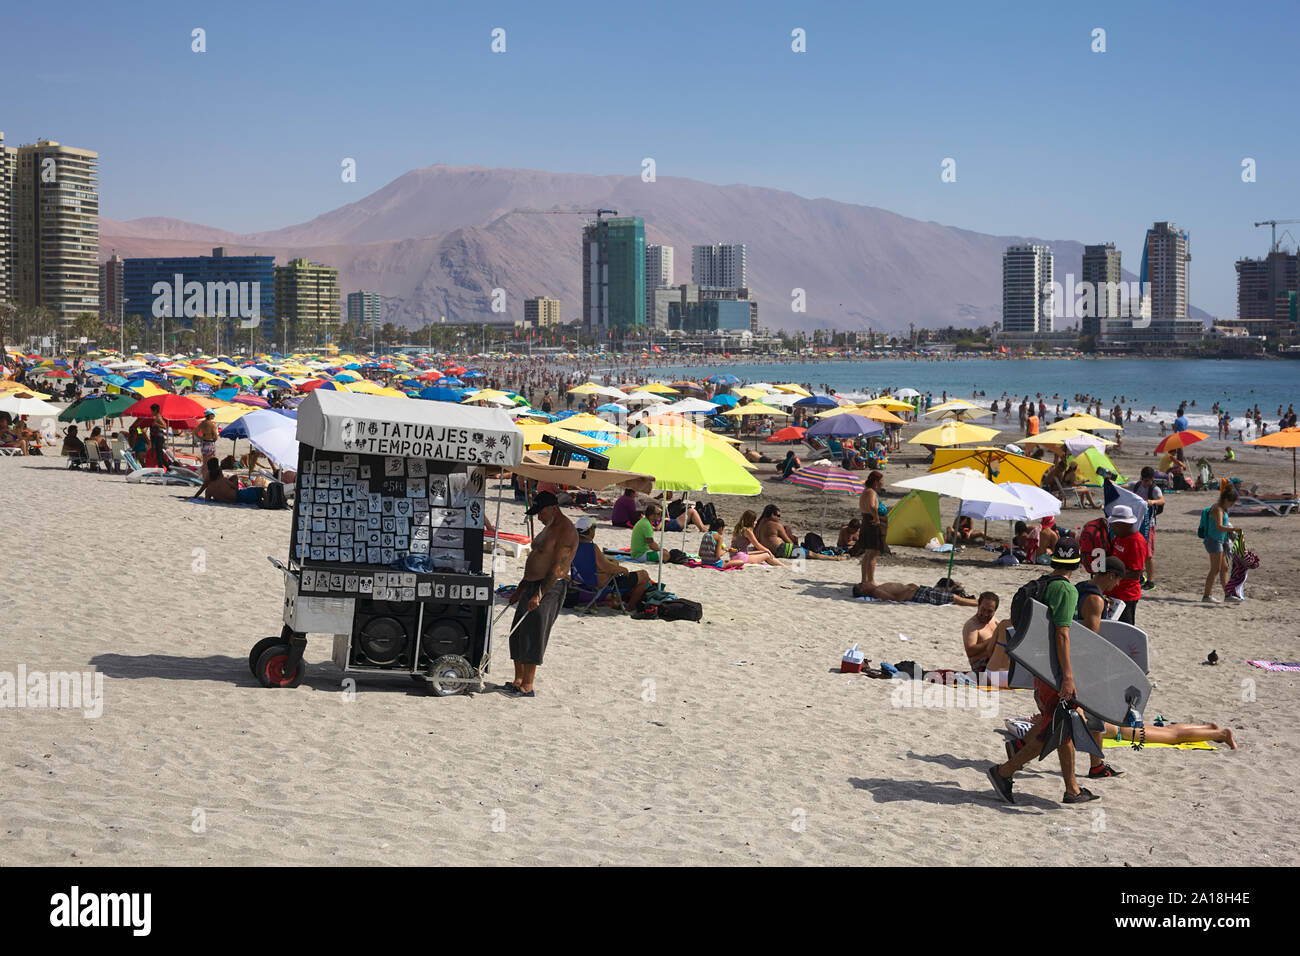 IQUIQUE, CHILI - 23 janvier 2015 : un homme tirant une charrette à travers le sable offrant des tatouages temporelles sur la plage Cavancha bondé à Iquique Banque D'Images